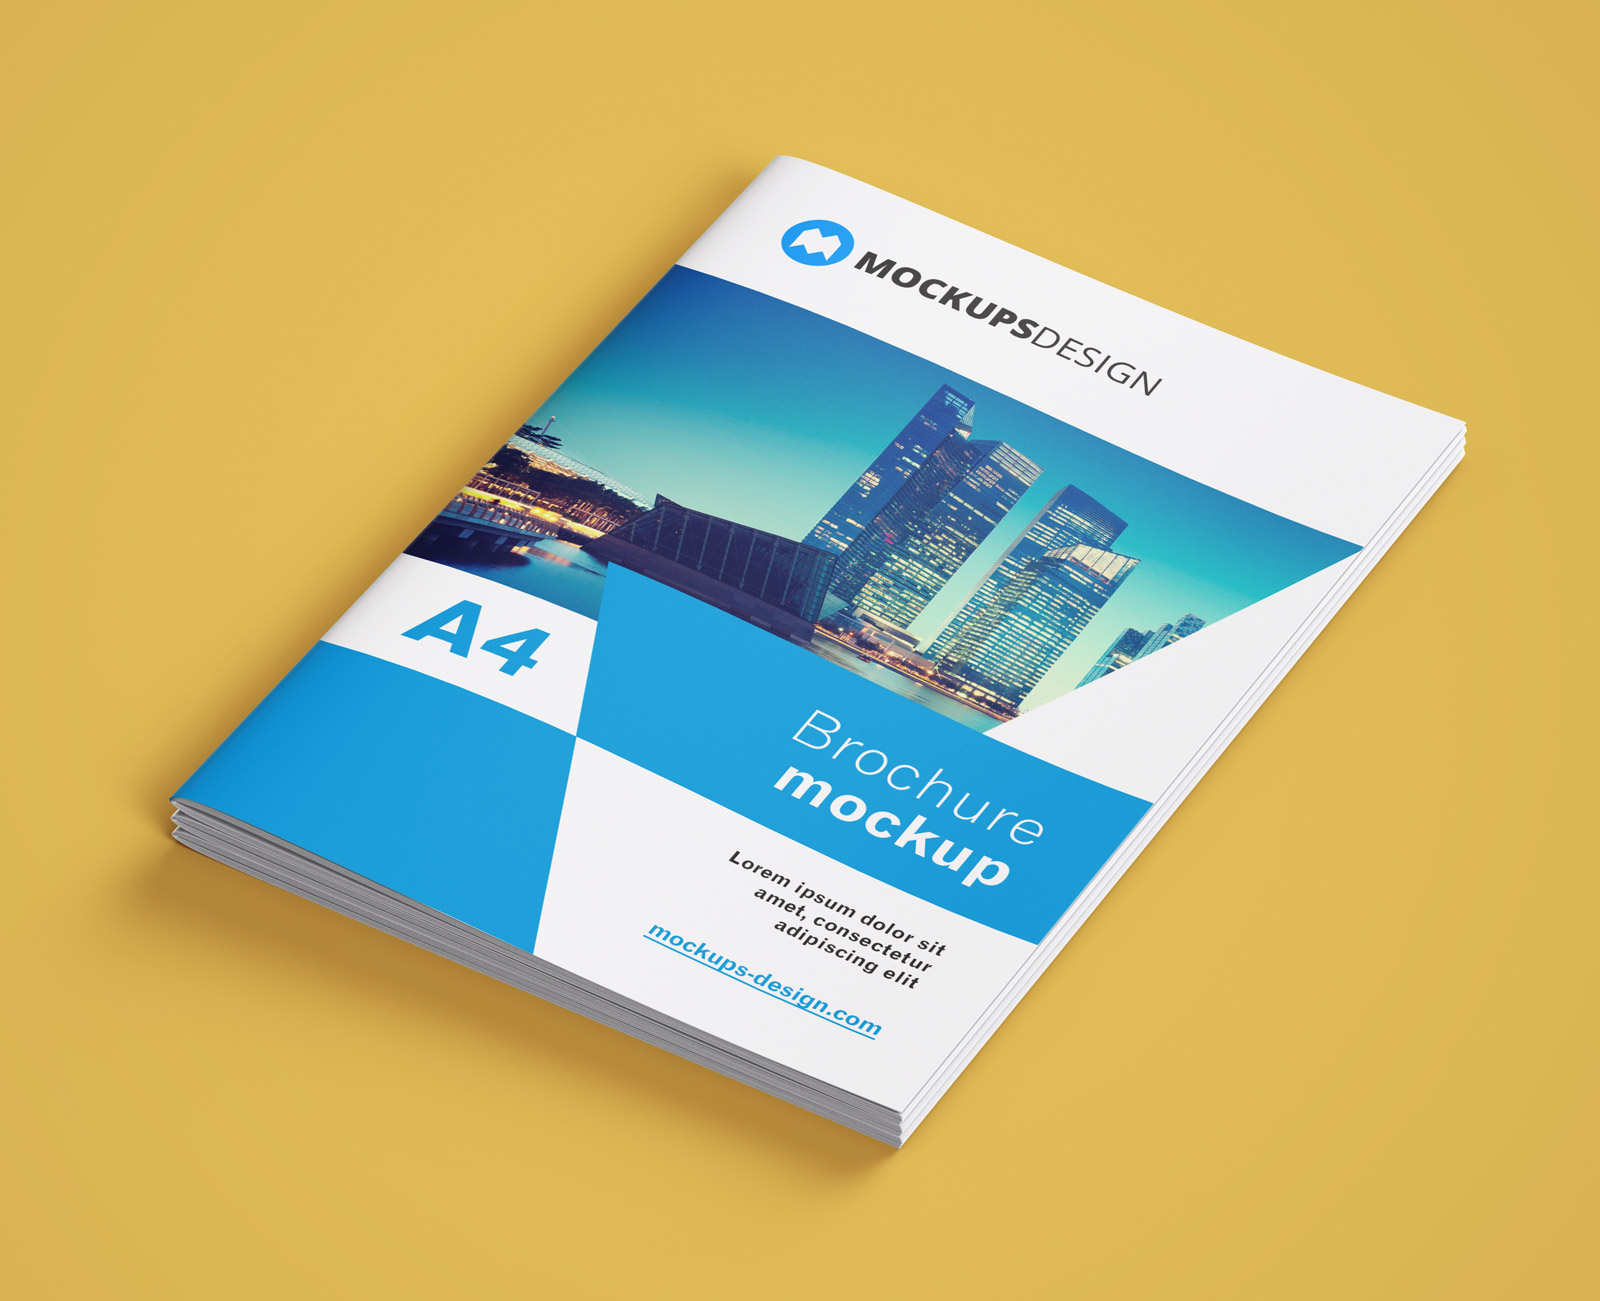 A4 Multi-Page Brochure / Mockup Mockup профиля компании